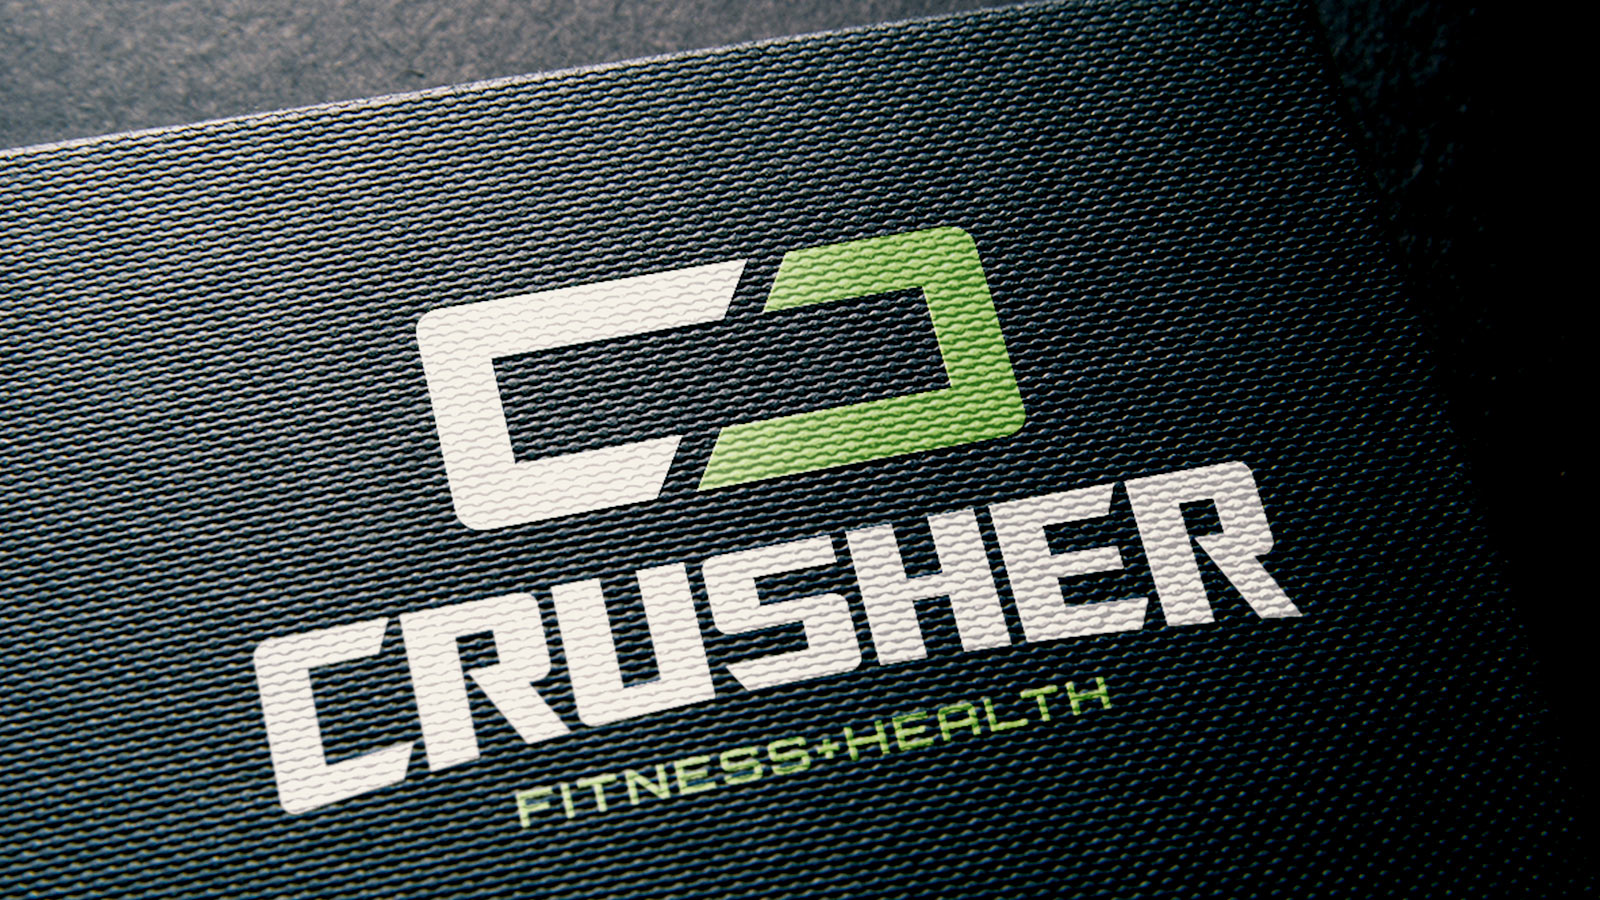 Crusher Fitness + Health